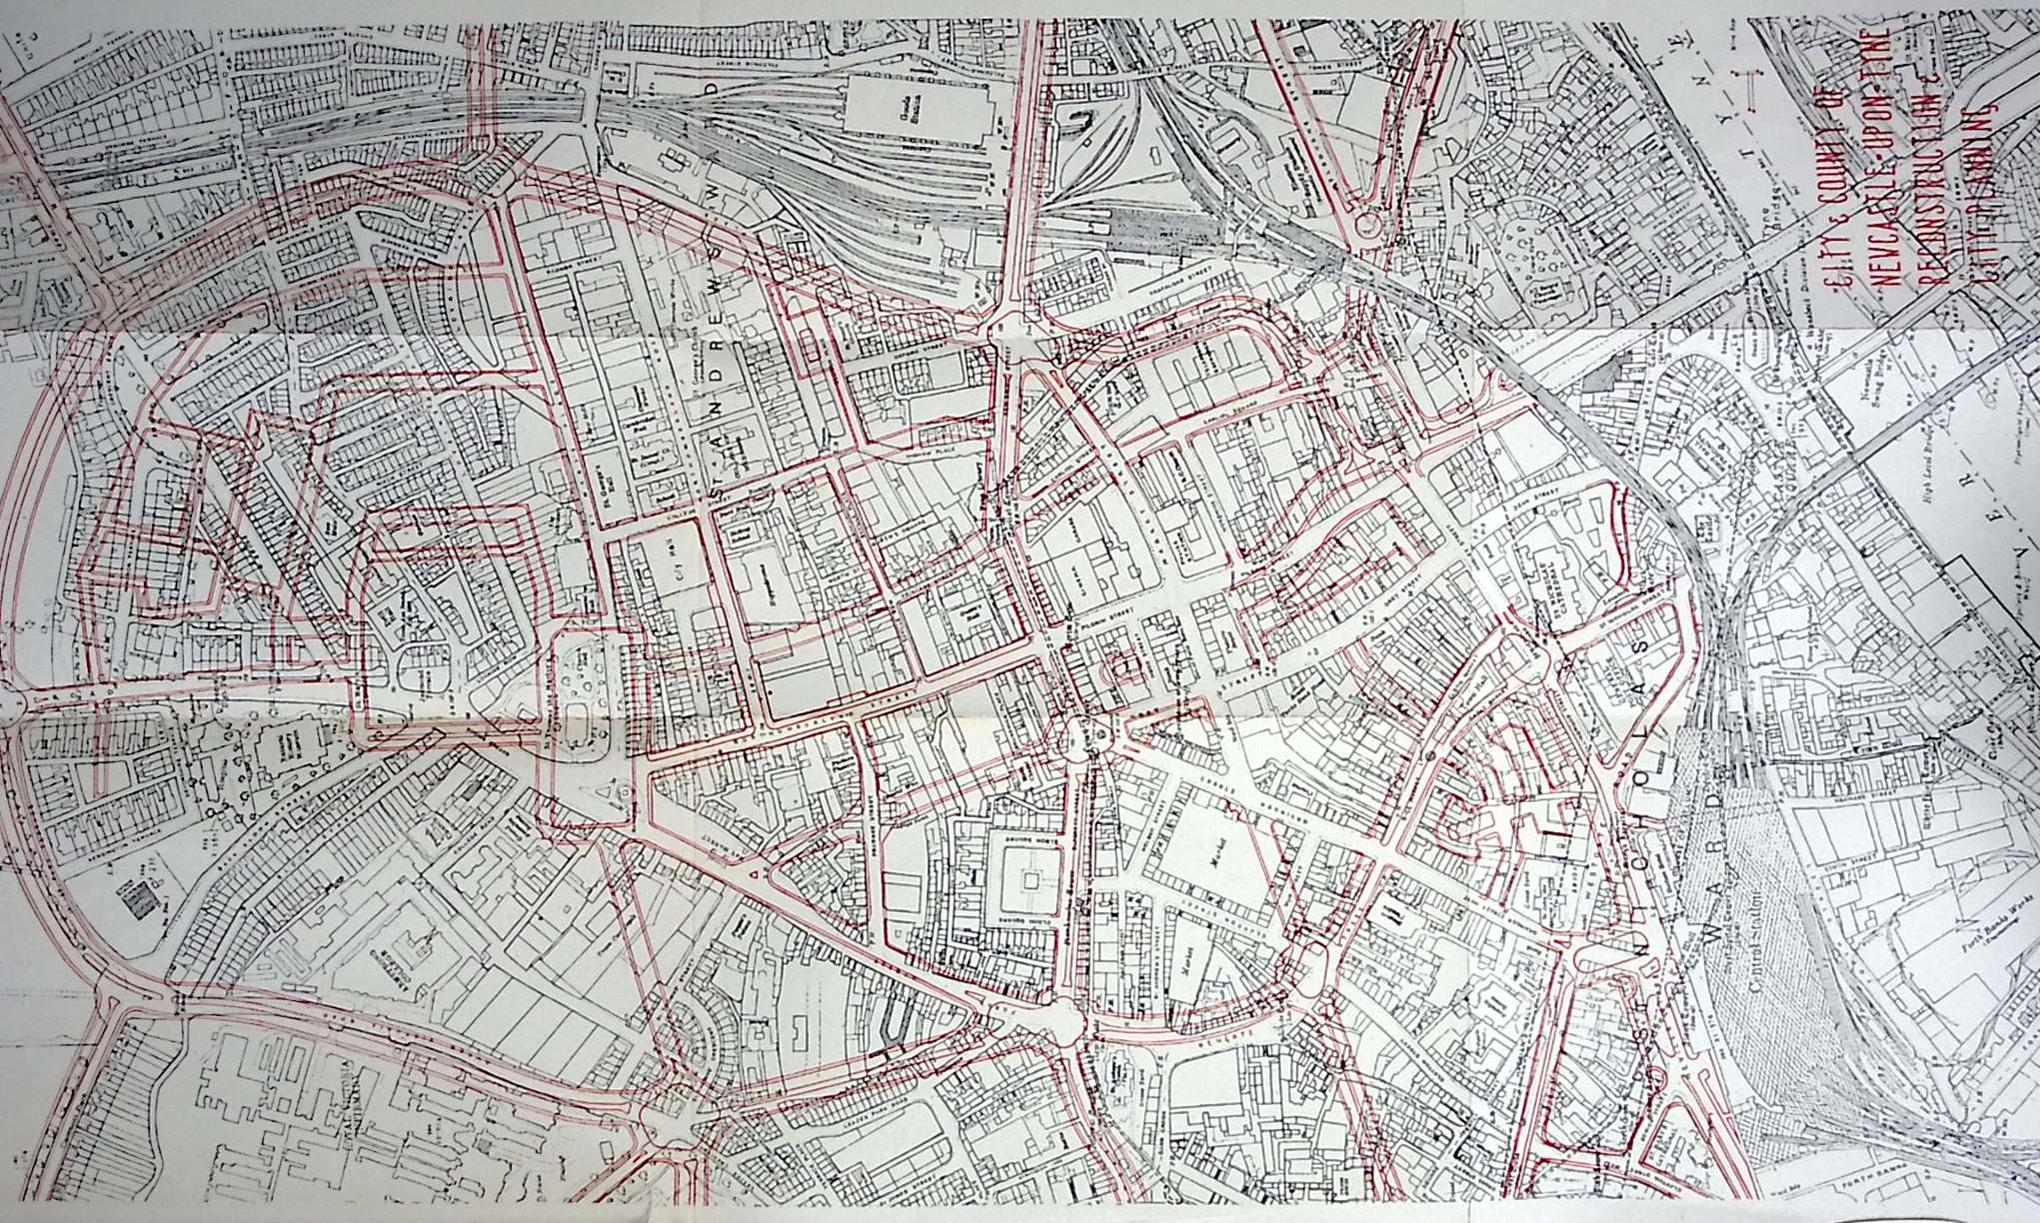 Plan. Newcastle upon Tyne 1945.